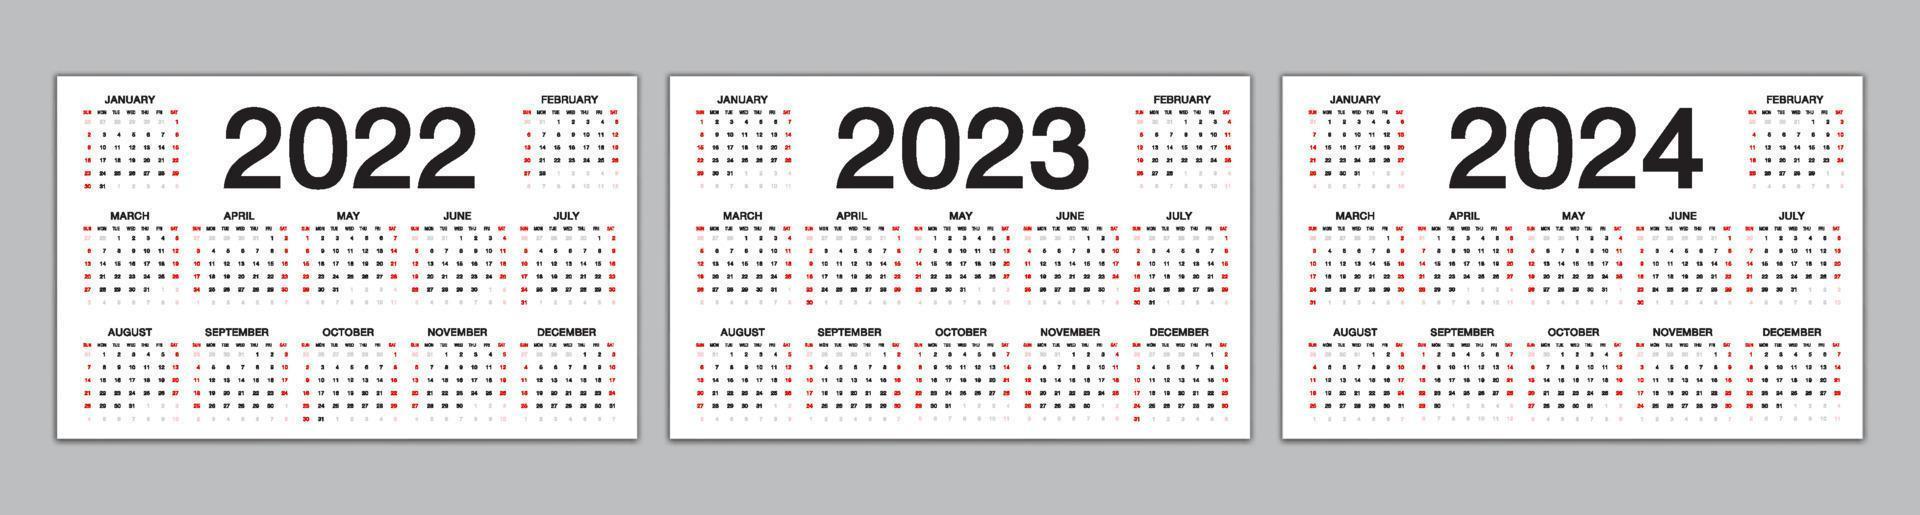 calendario 2022, 2023, plantilla de 2024 años, calendario simple, diseño de calendario de escritorio, calendario de pared, la semana comienza el domingo. conjunto de 12 meses, planificador, afiche, vector eps10